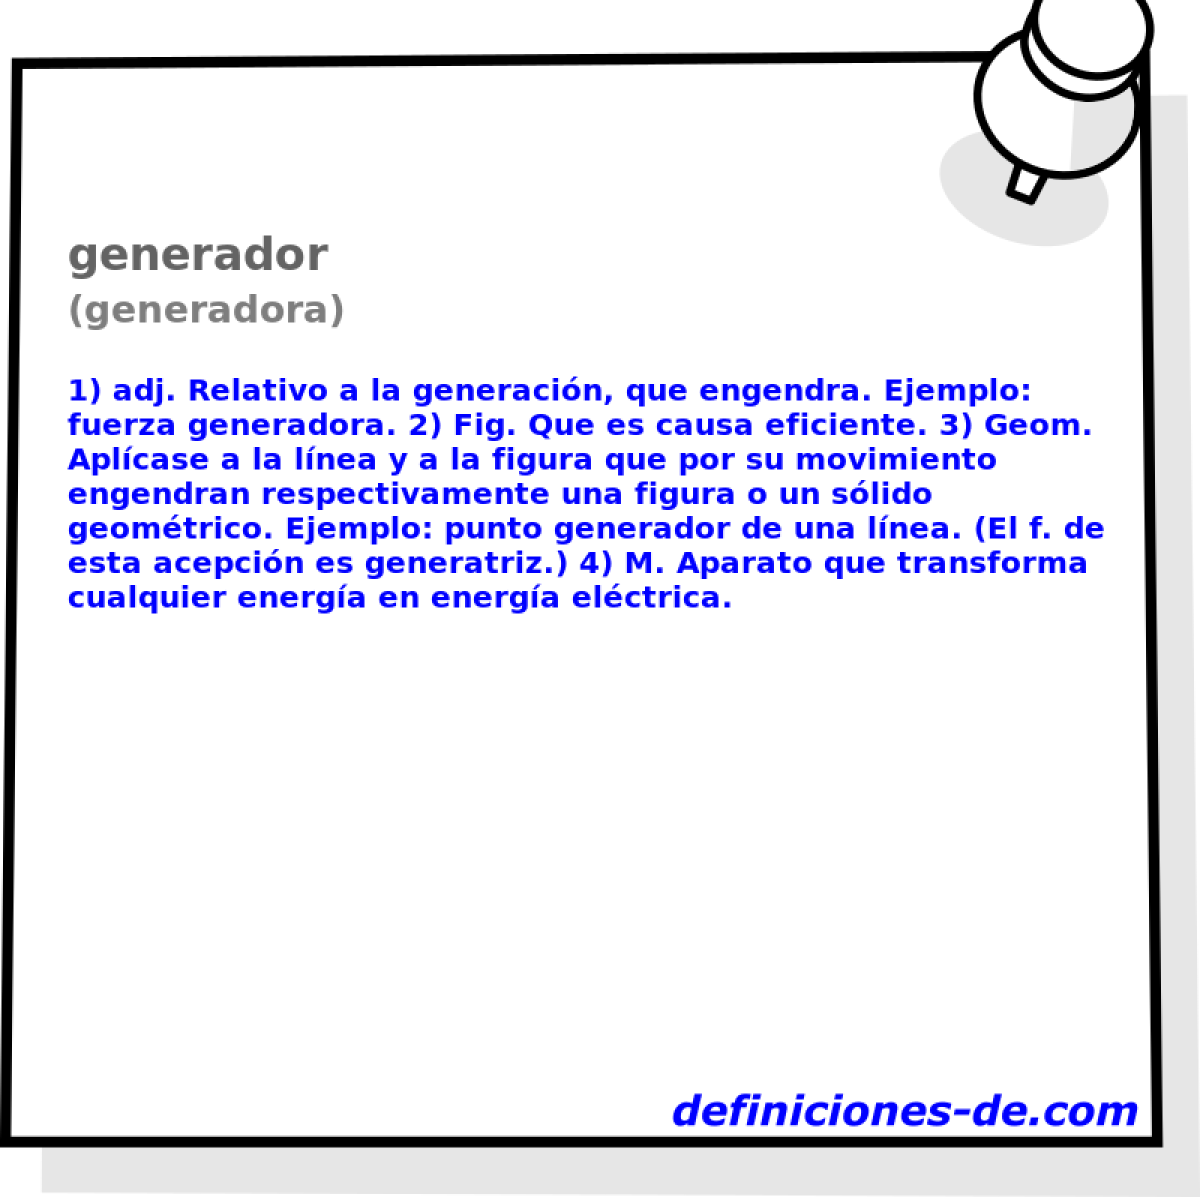 generador (generadora)